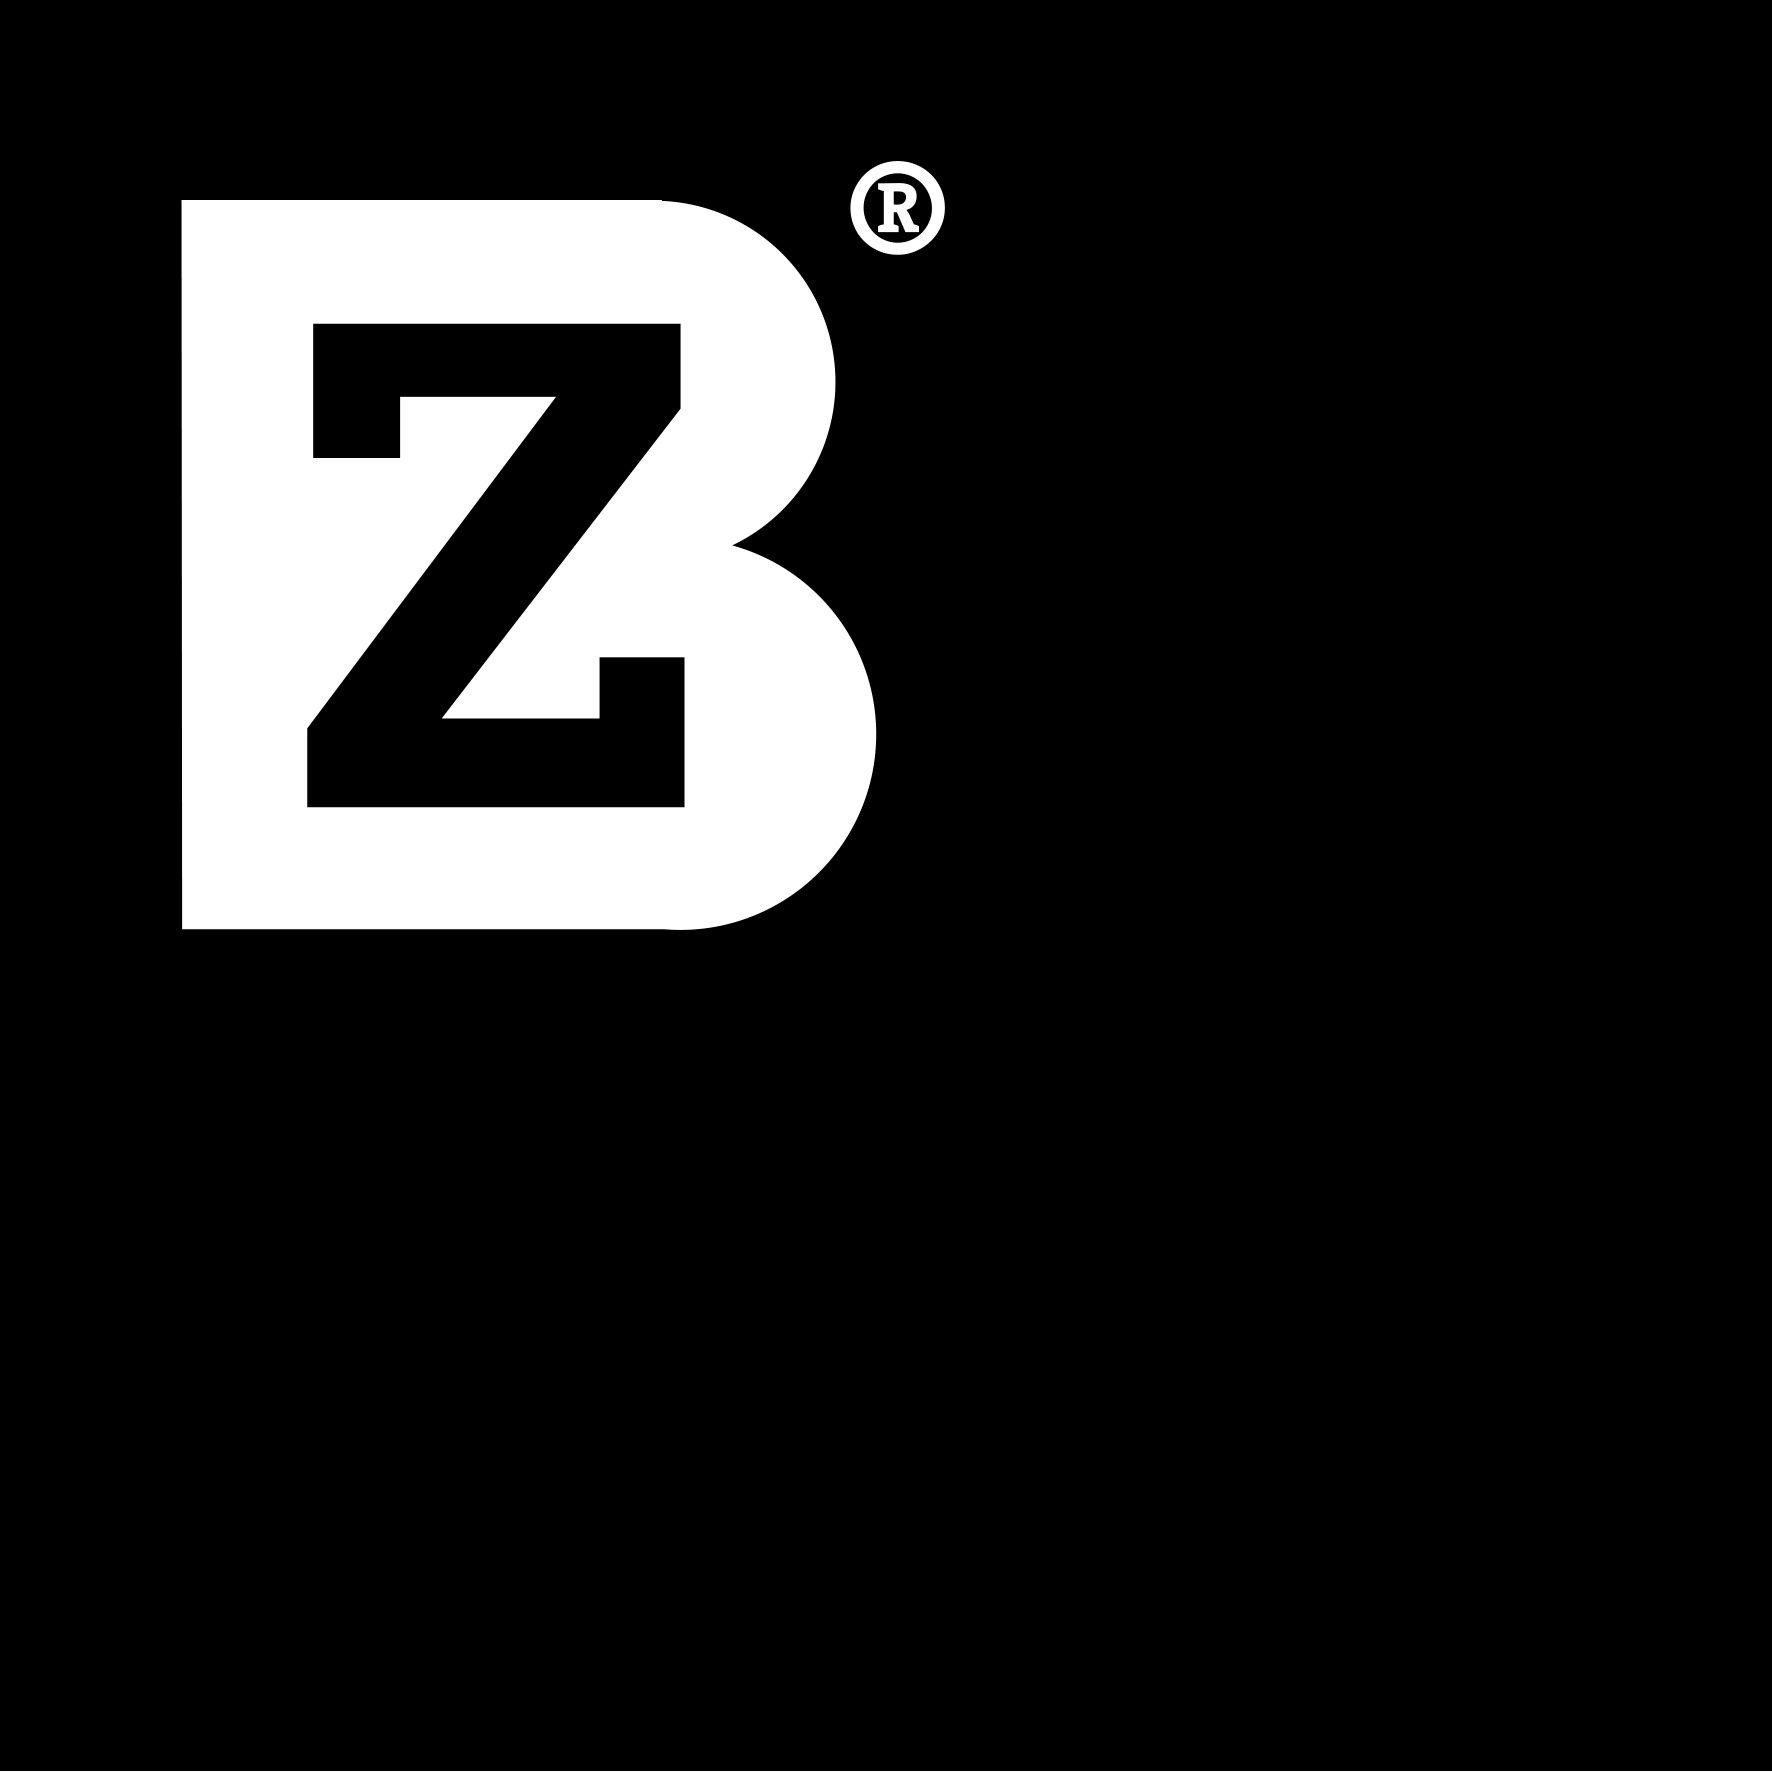 Bz Logo - bz-logo-large - The Great British Expo